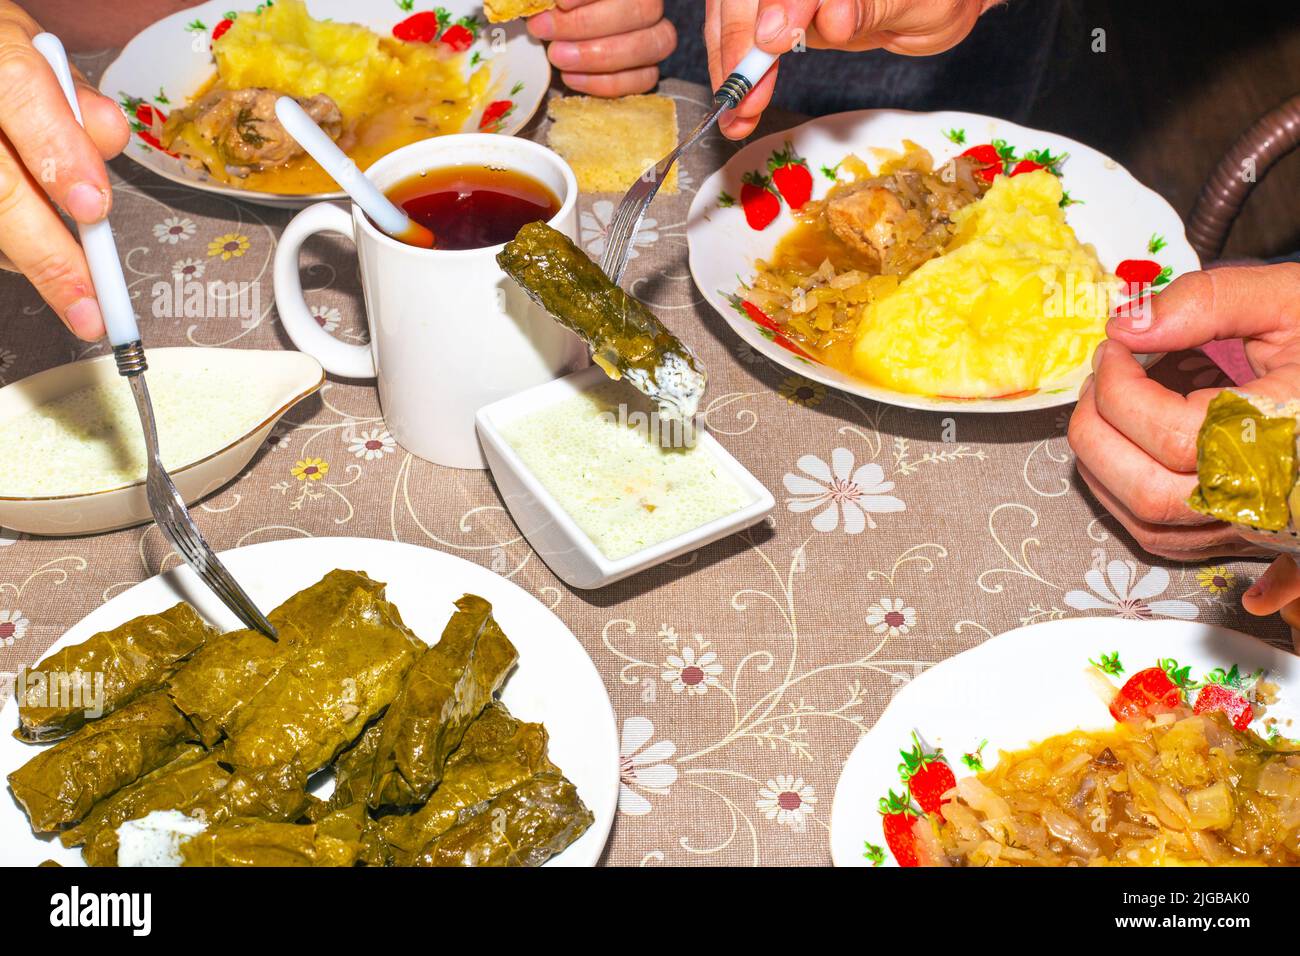 La famiglia sta mangiando al tavolo della cena. Dolma su un piatto, salsa e purè di patate con cavolo, tazze con bevande, vista dall'alto. Foto Stock